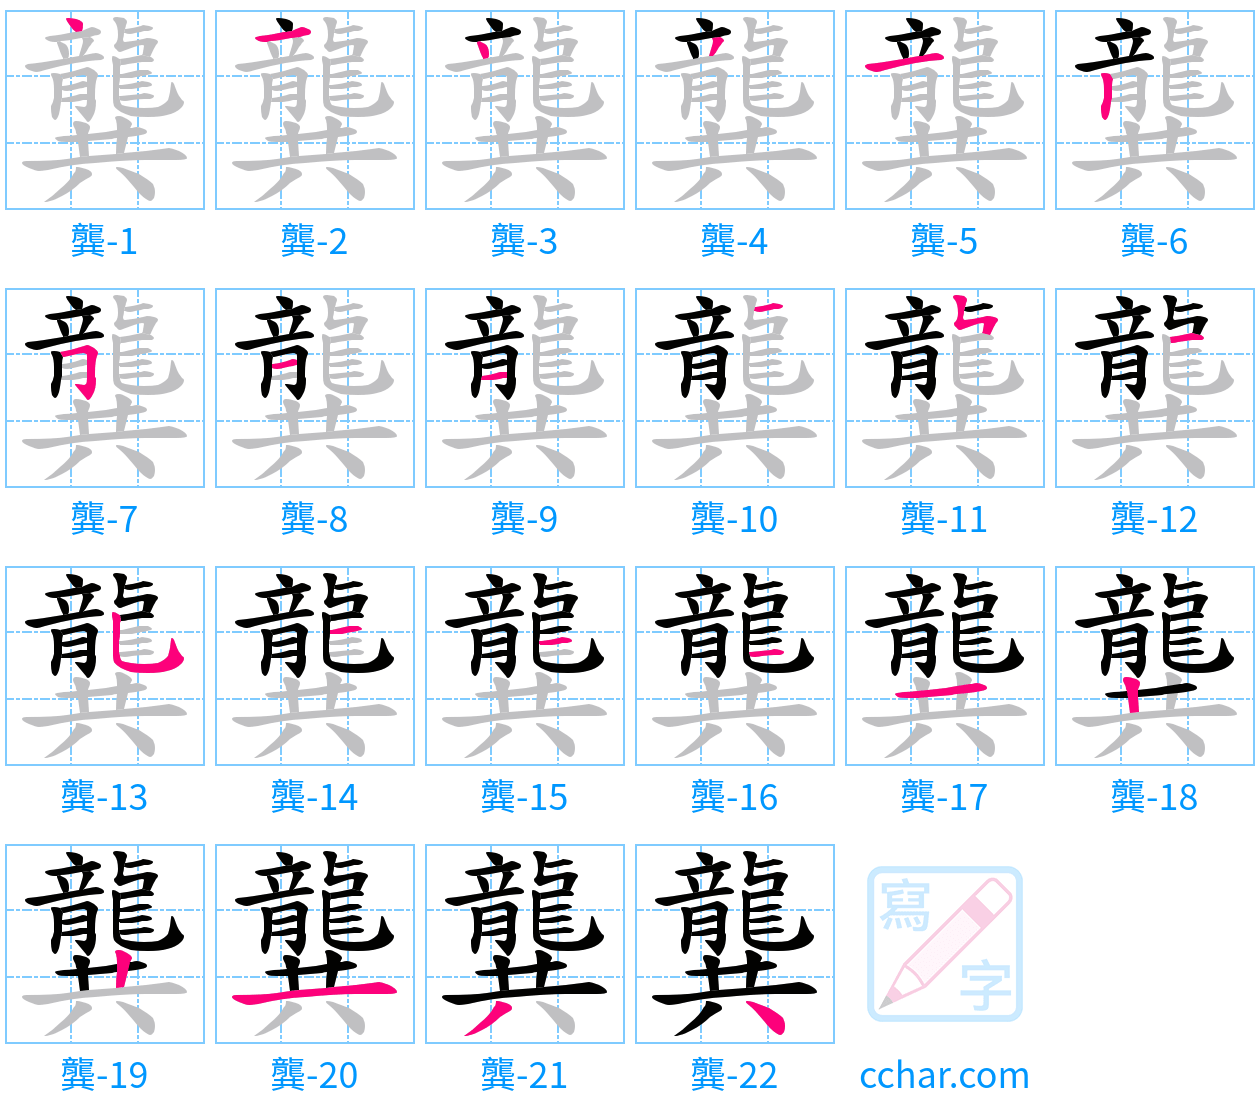 龔 stroke order step-by-step diagram